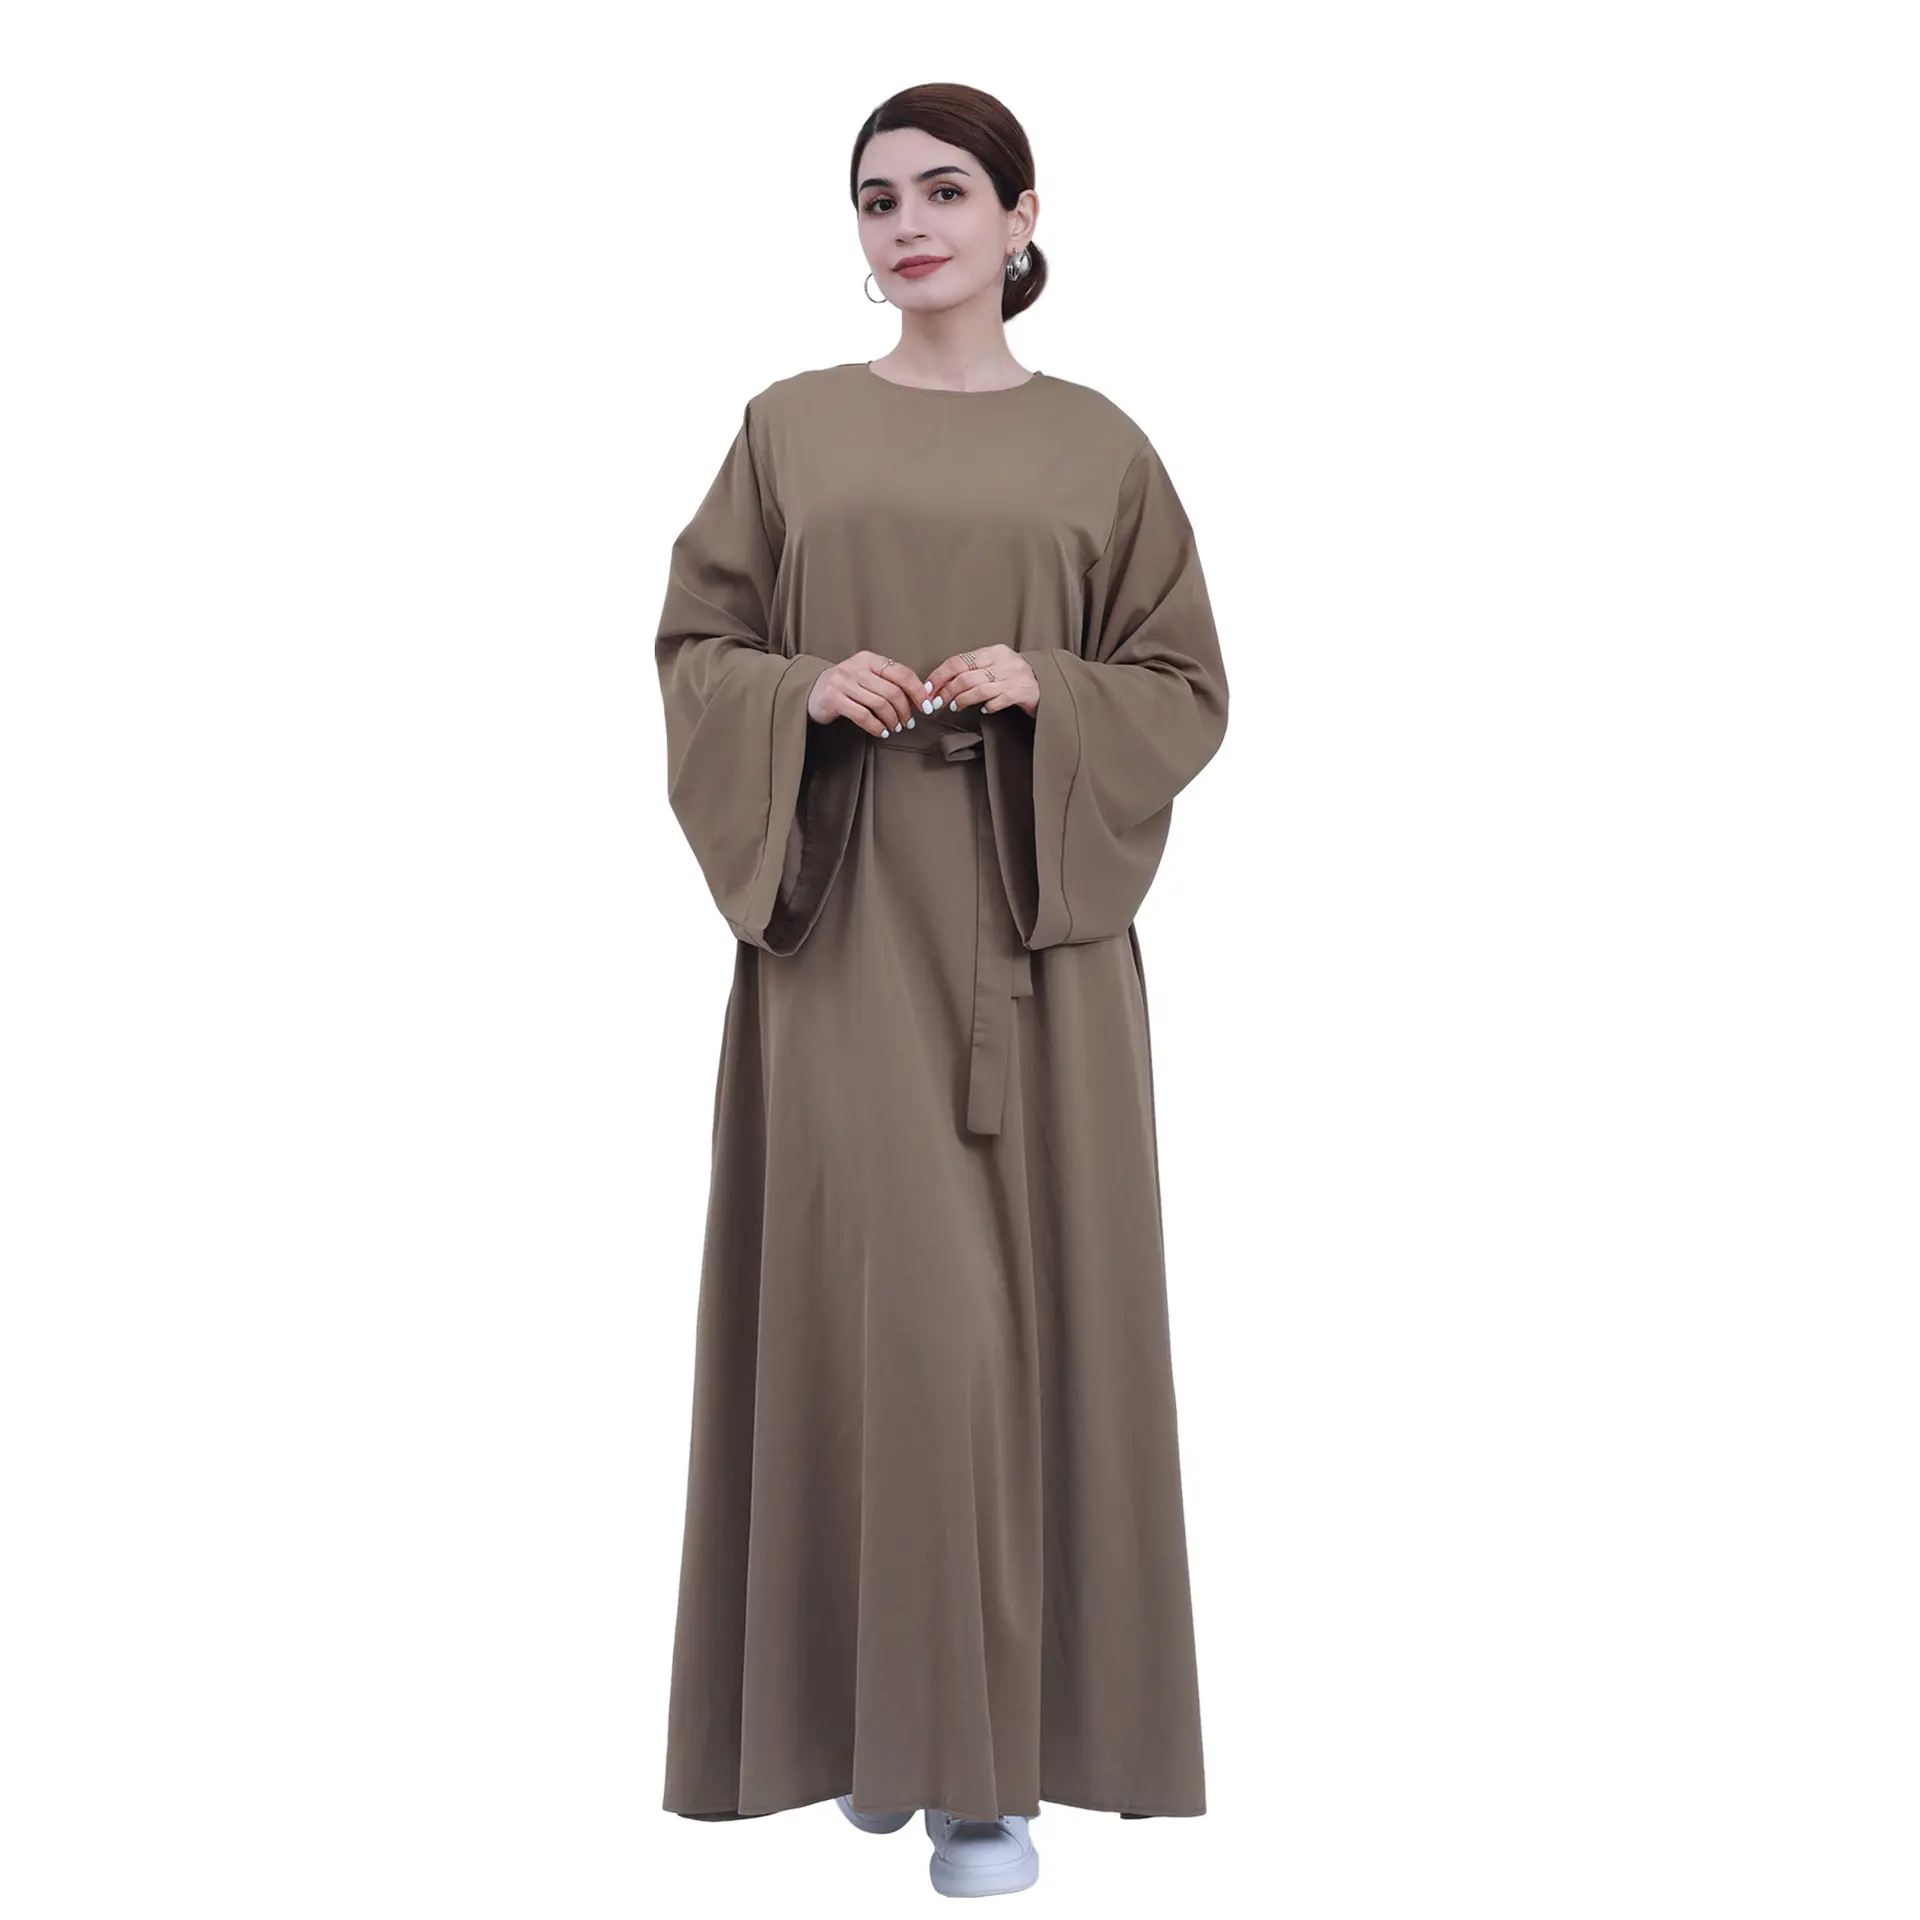 Abito musulmano Nida modesto abiti Abaya tinta unita tradizionale classico abbigliamento islamico per donne musulmane